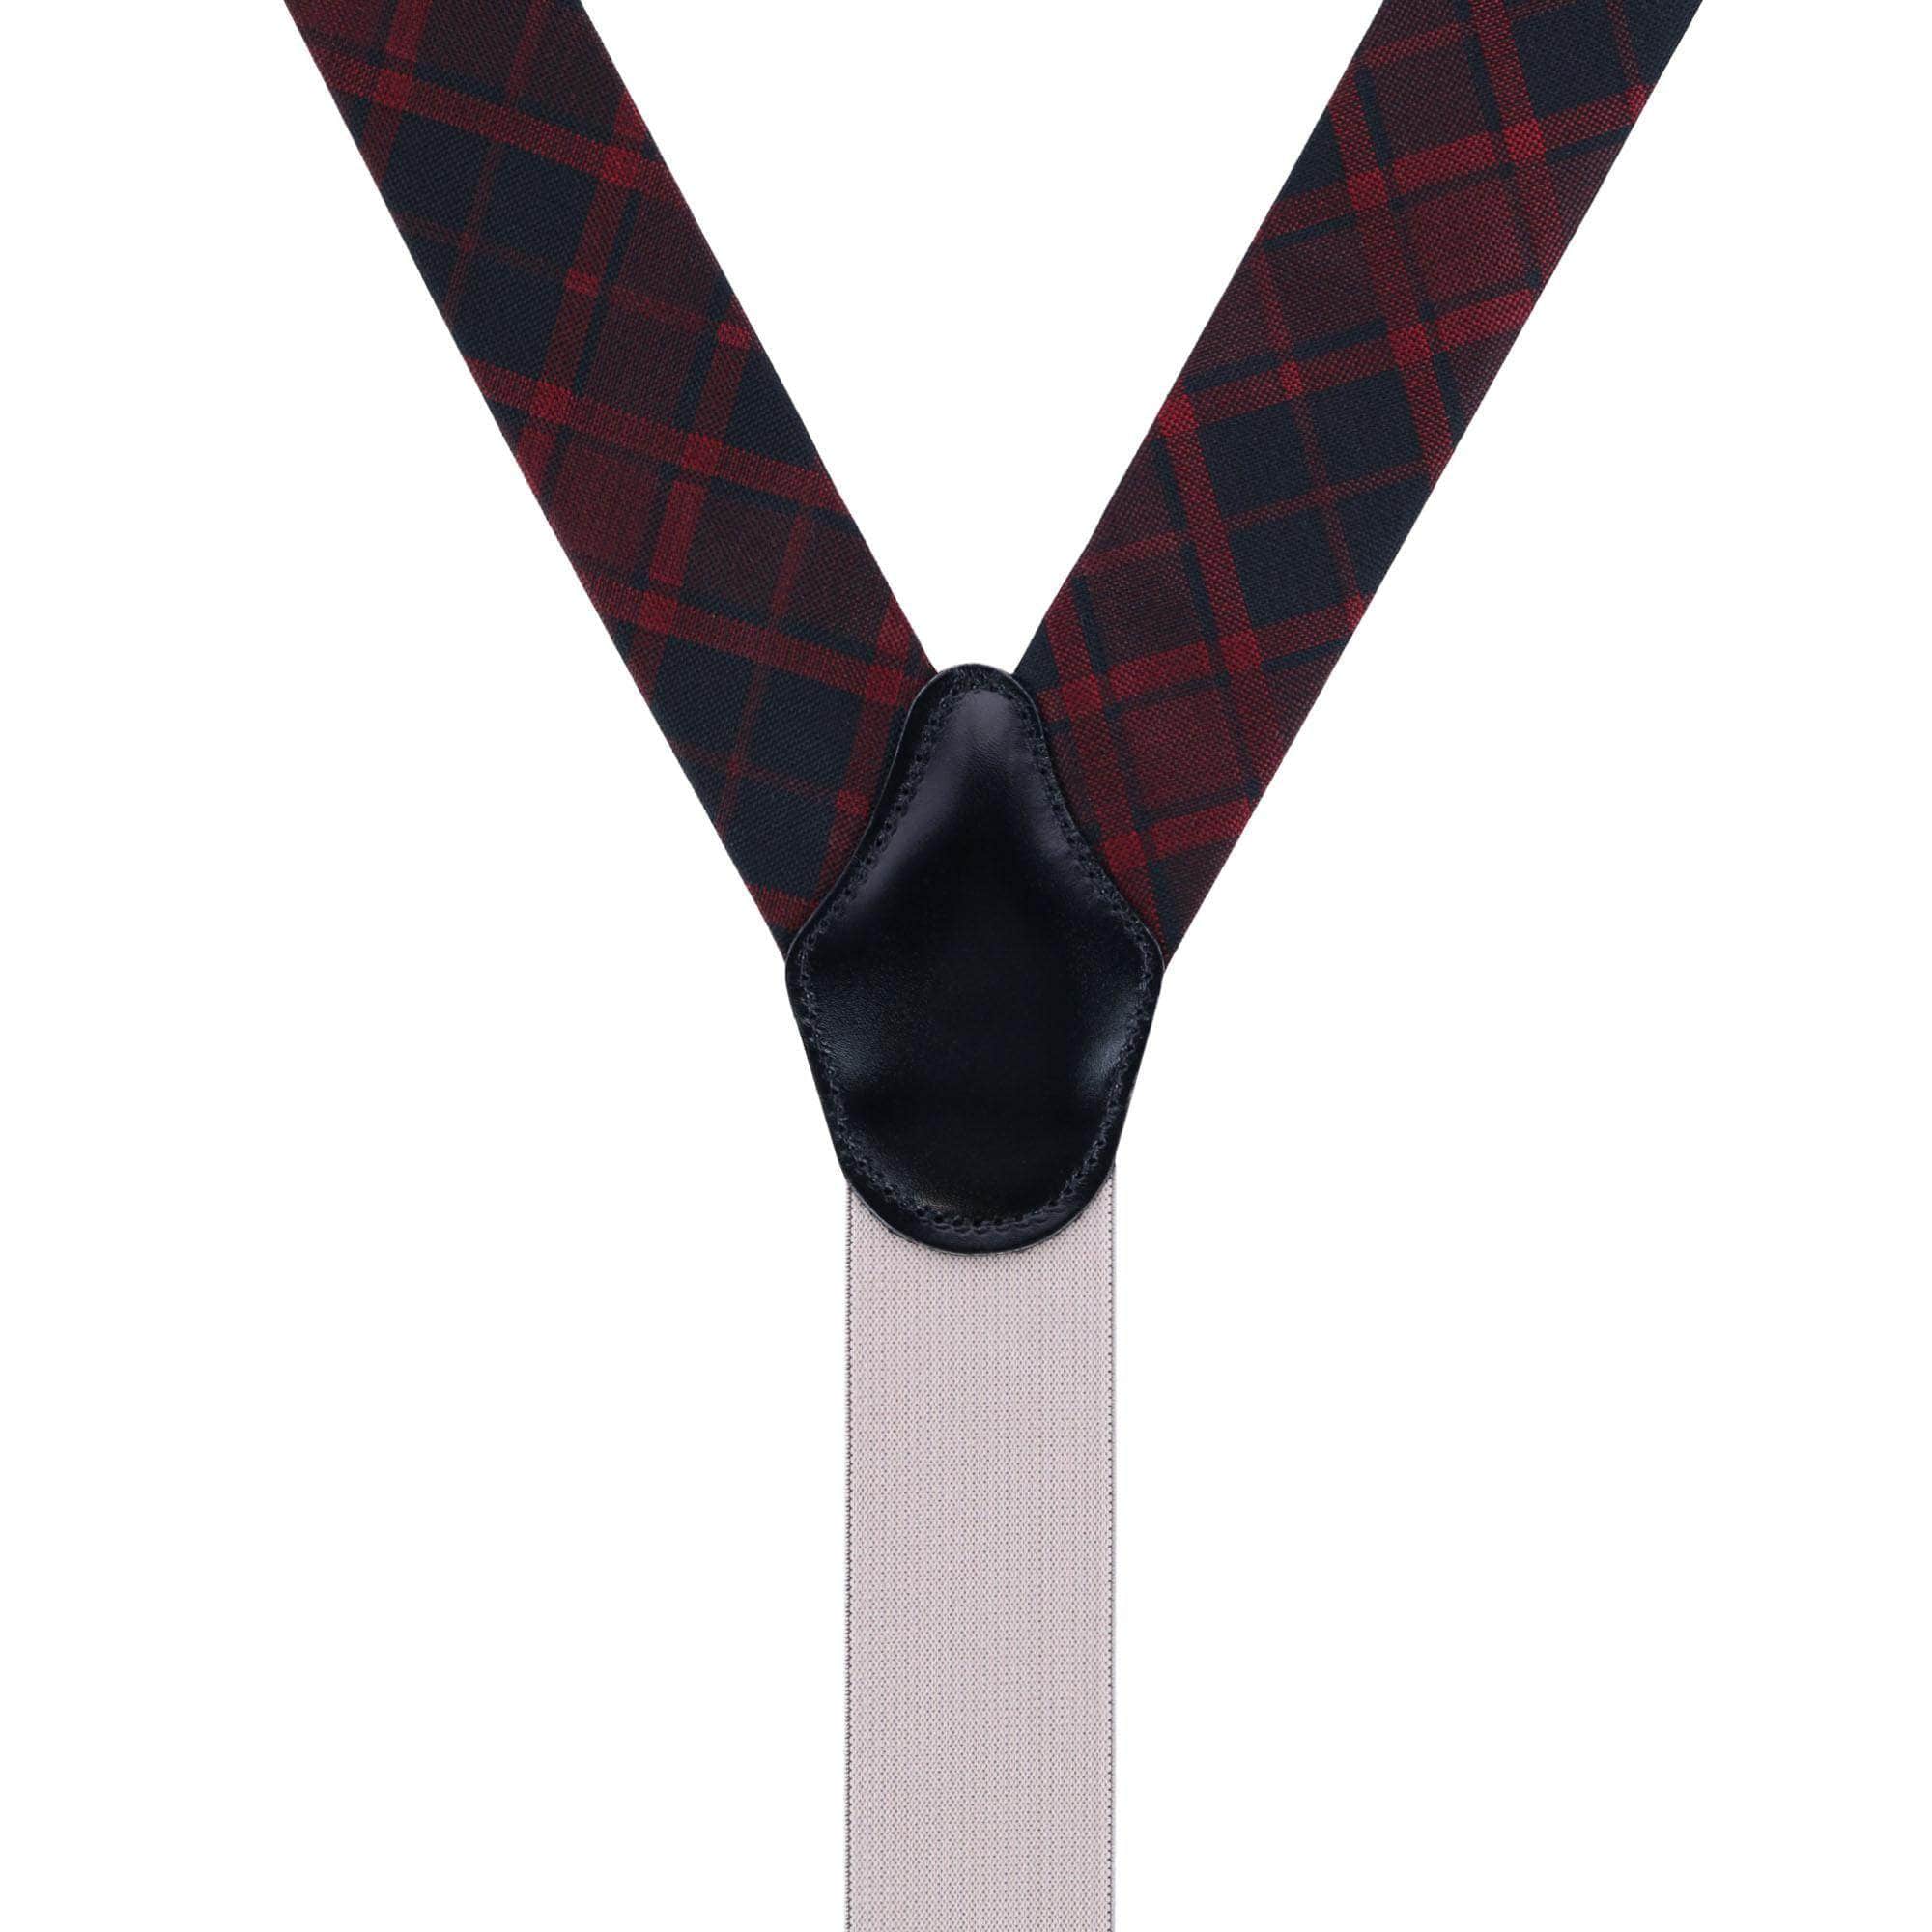 ALSLIAO Men Matching Suspenders Braces Bow Tie Combo Sets Fancy